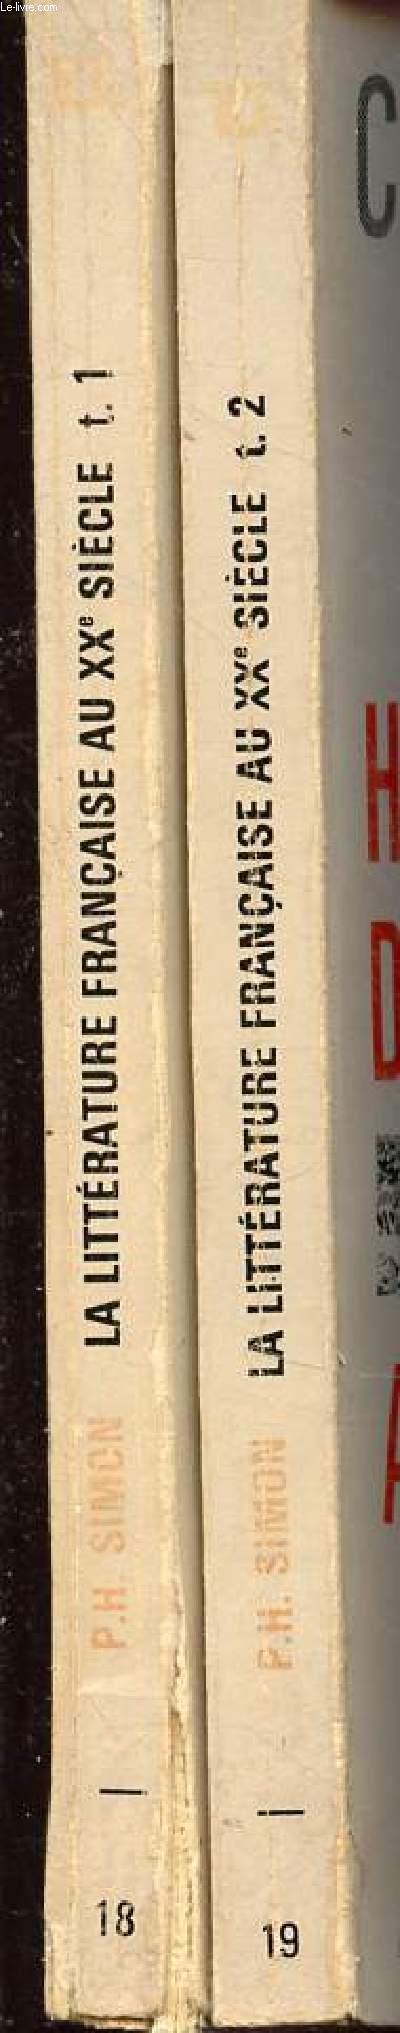 Histoire de la littrature franaise au XXe sicle 1900-1950 en 2 tomes (tomes 1+2) - collection U2 n18+19